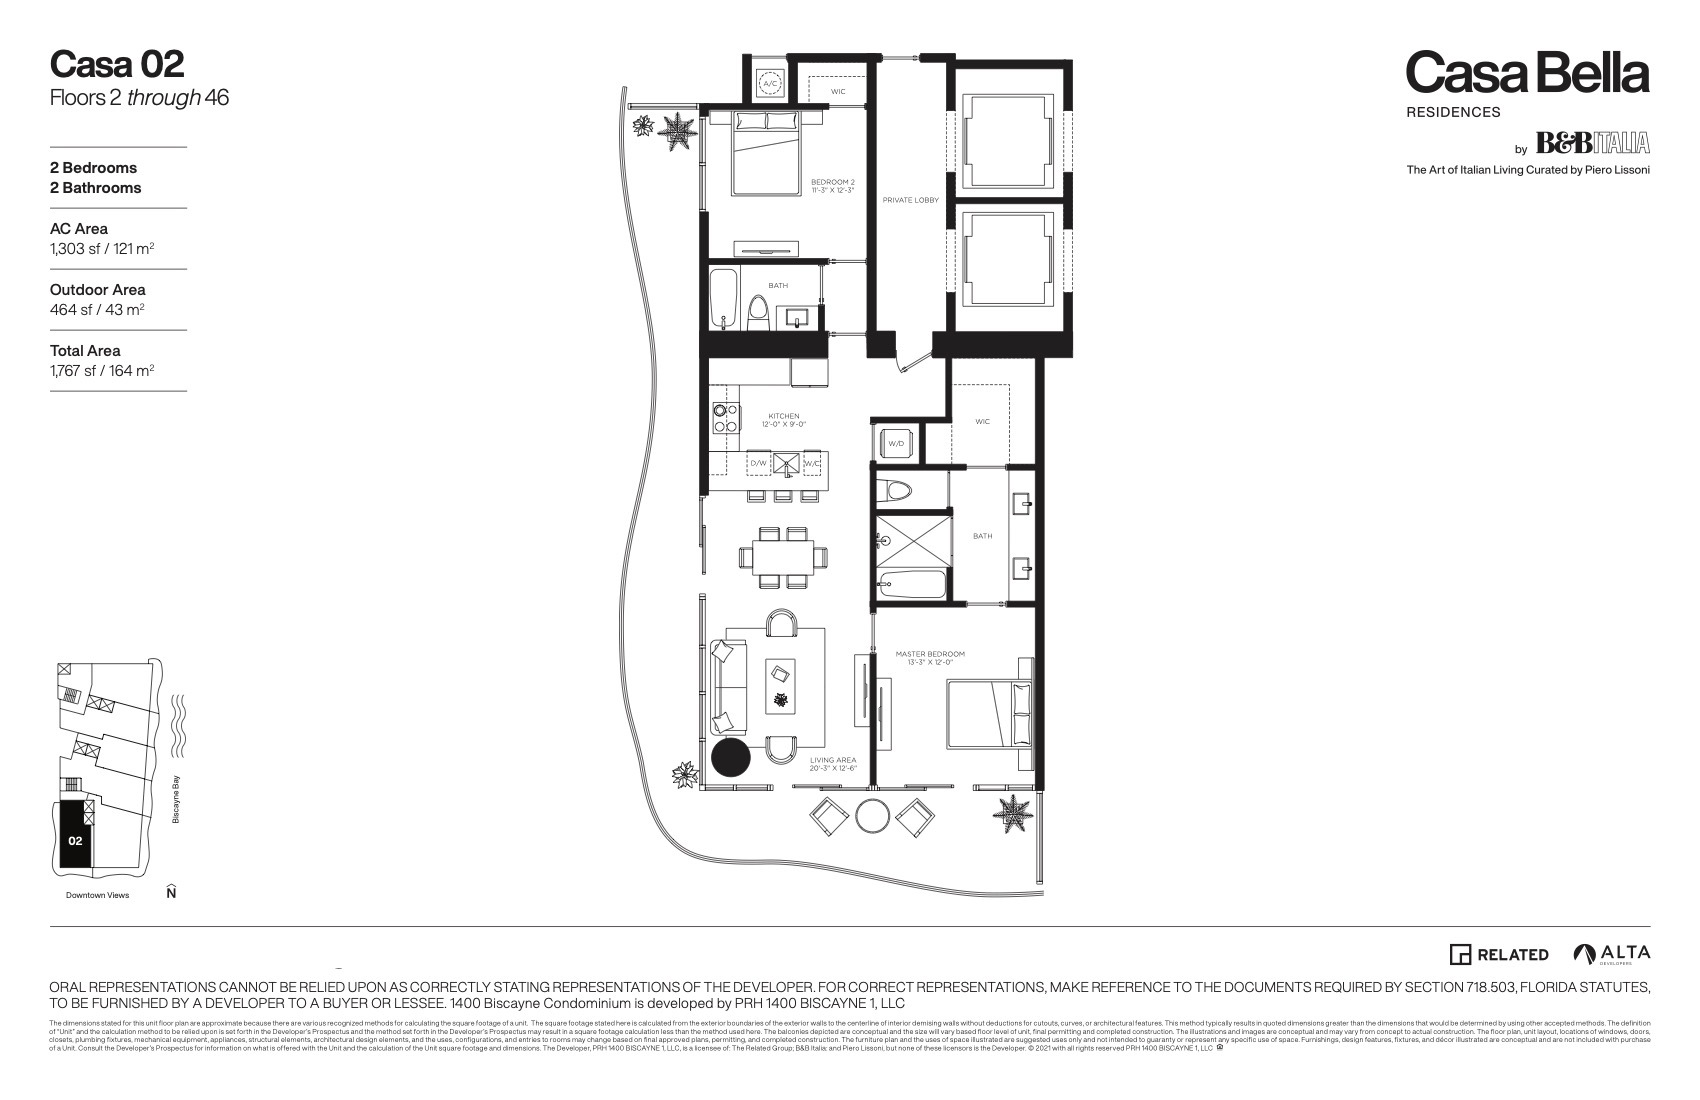 Floor Plan for Casa Bella Downtown Miami Floorplans, Casa 02